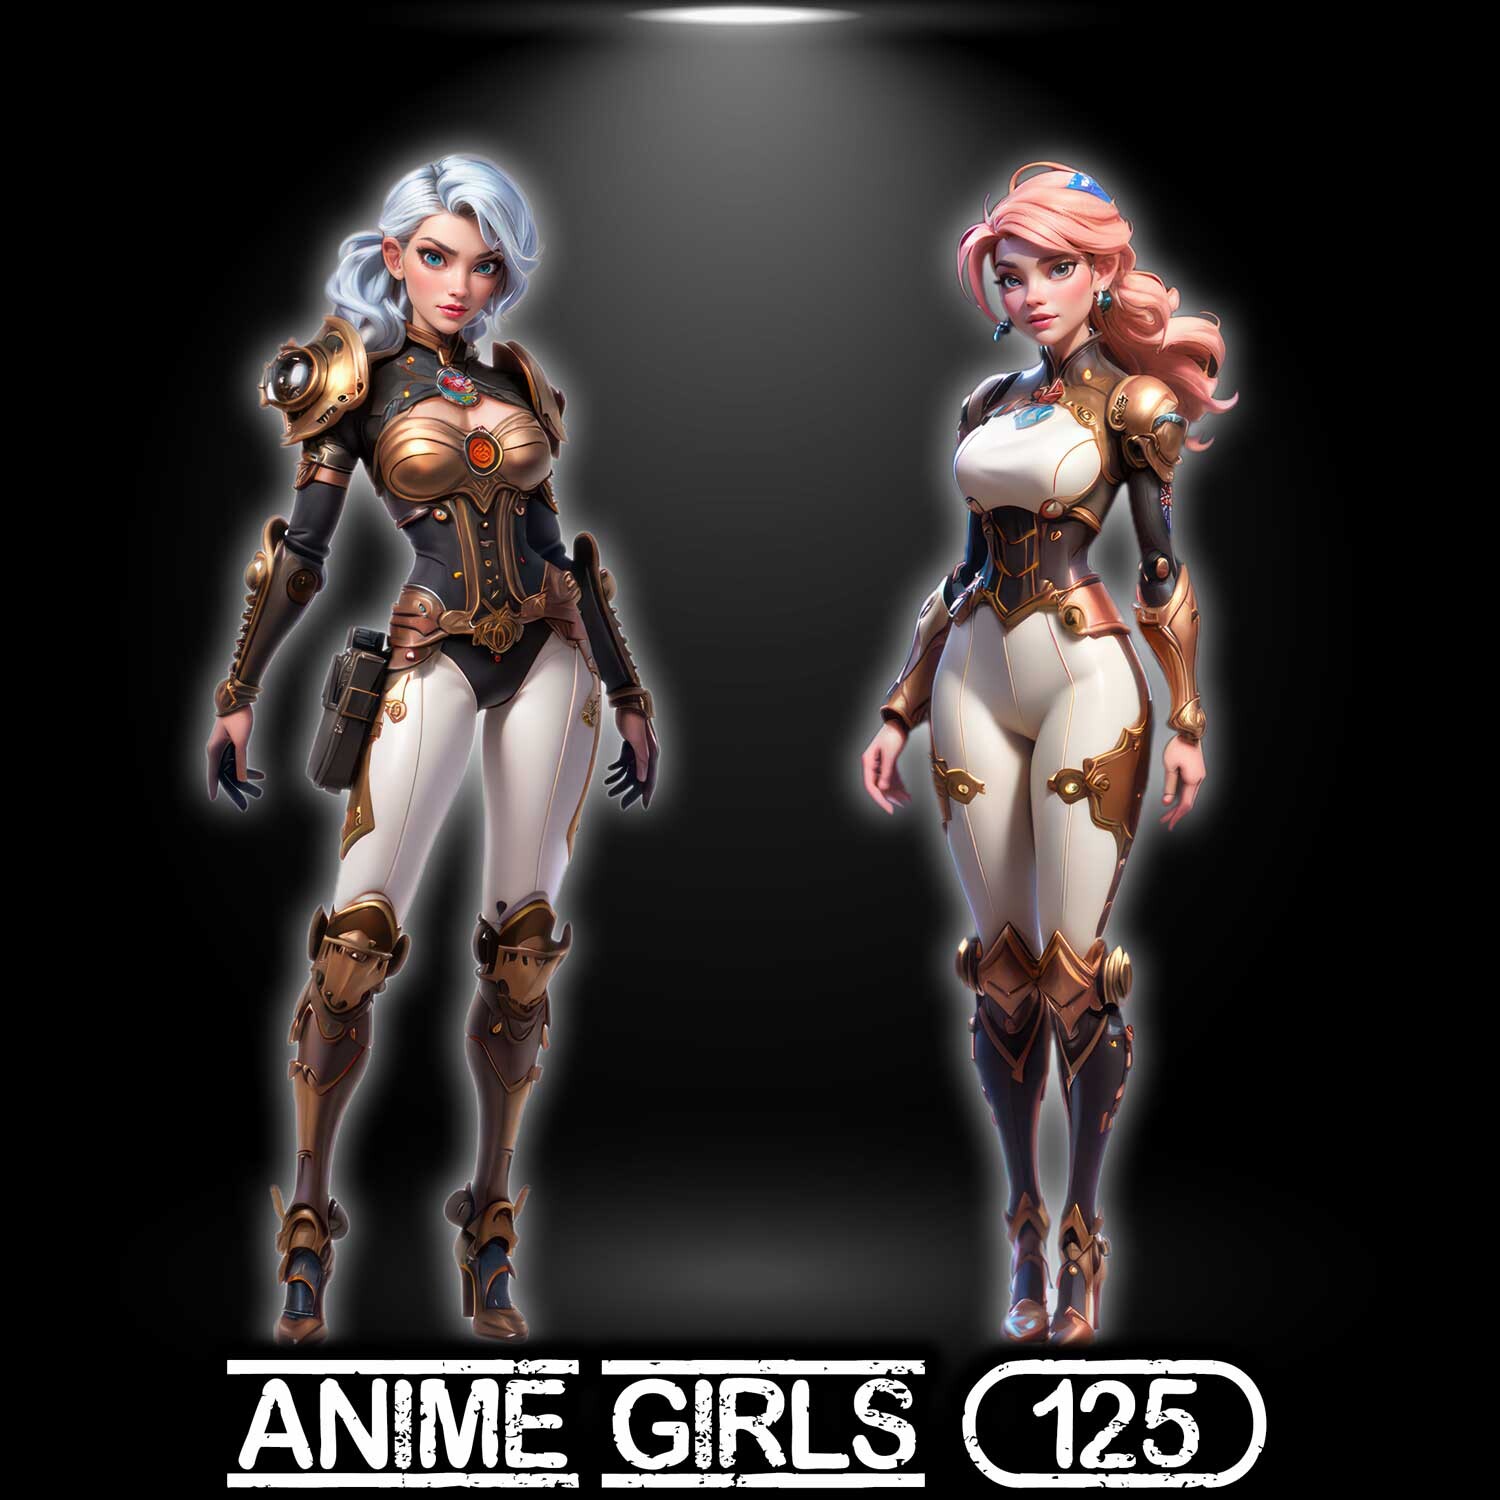 Anime Girl #7 - Steam Artwork Design by frannnrod on DeviantArt